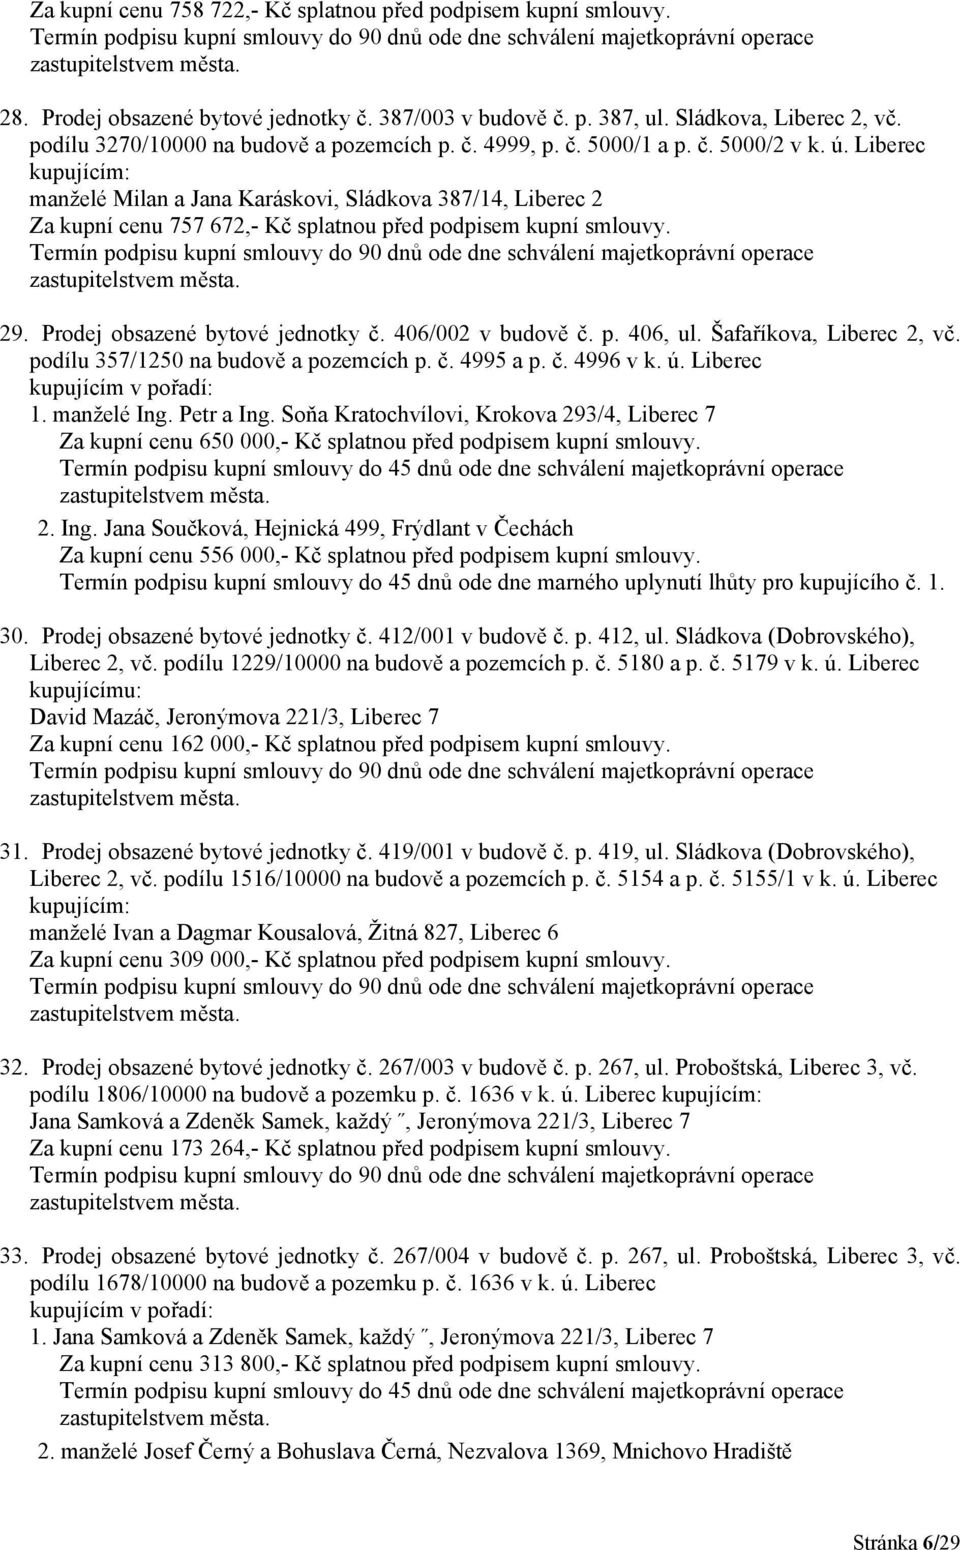 Liberec kupujícím: manželé Milan a Jana Karáskovi, Sládkova 387/14, Liberec 2 Za kupní cenu 757 672,- Kč splatnou před podpisem kupní smlouvy. 29. Prodej obsazené bytové jednotky č.